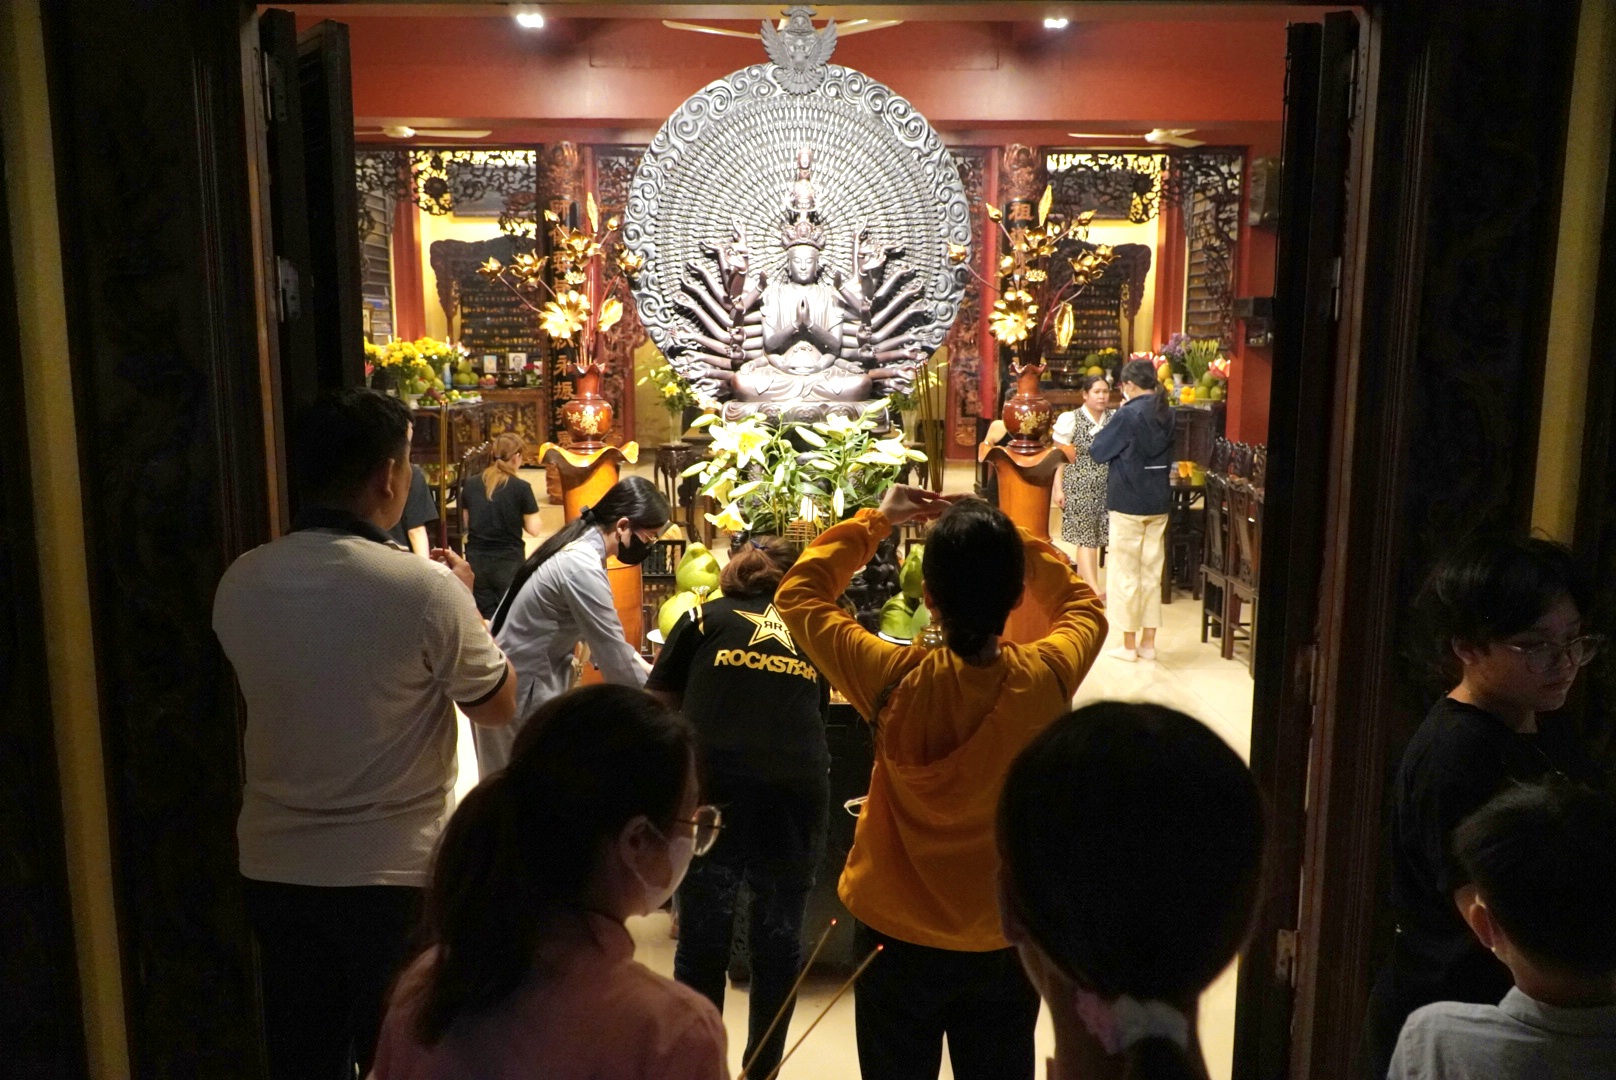 Tương tự, tại chùa Pháp Hoa (Quận 3, TPHCM) rất đông người dân cũng đã có mặt tại đây để thắp nhang, lễ phật dù là buổi tối.